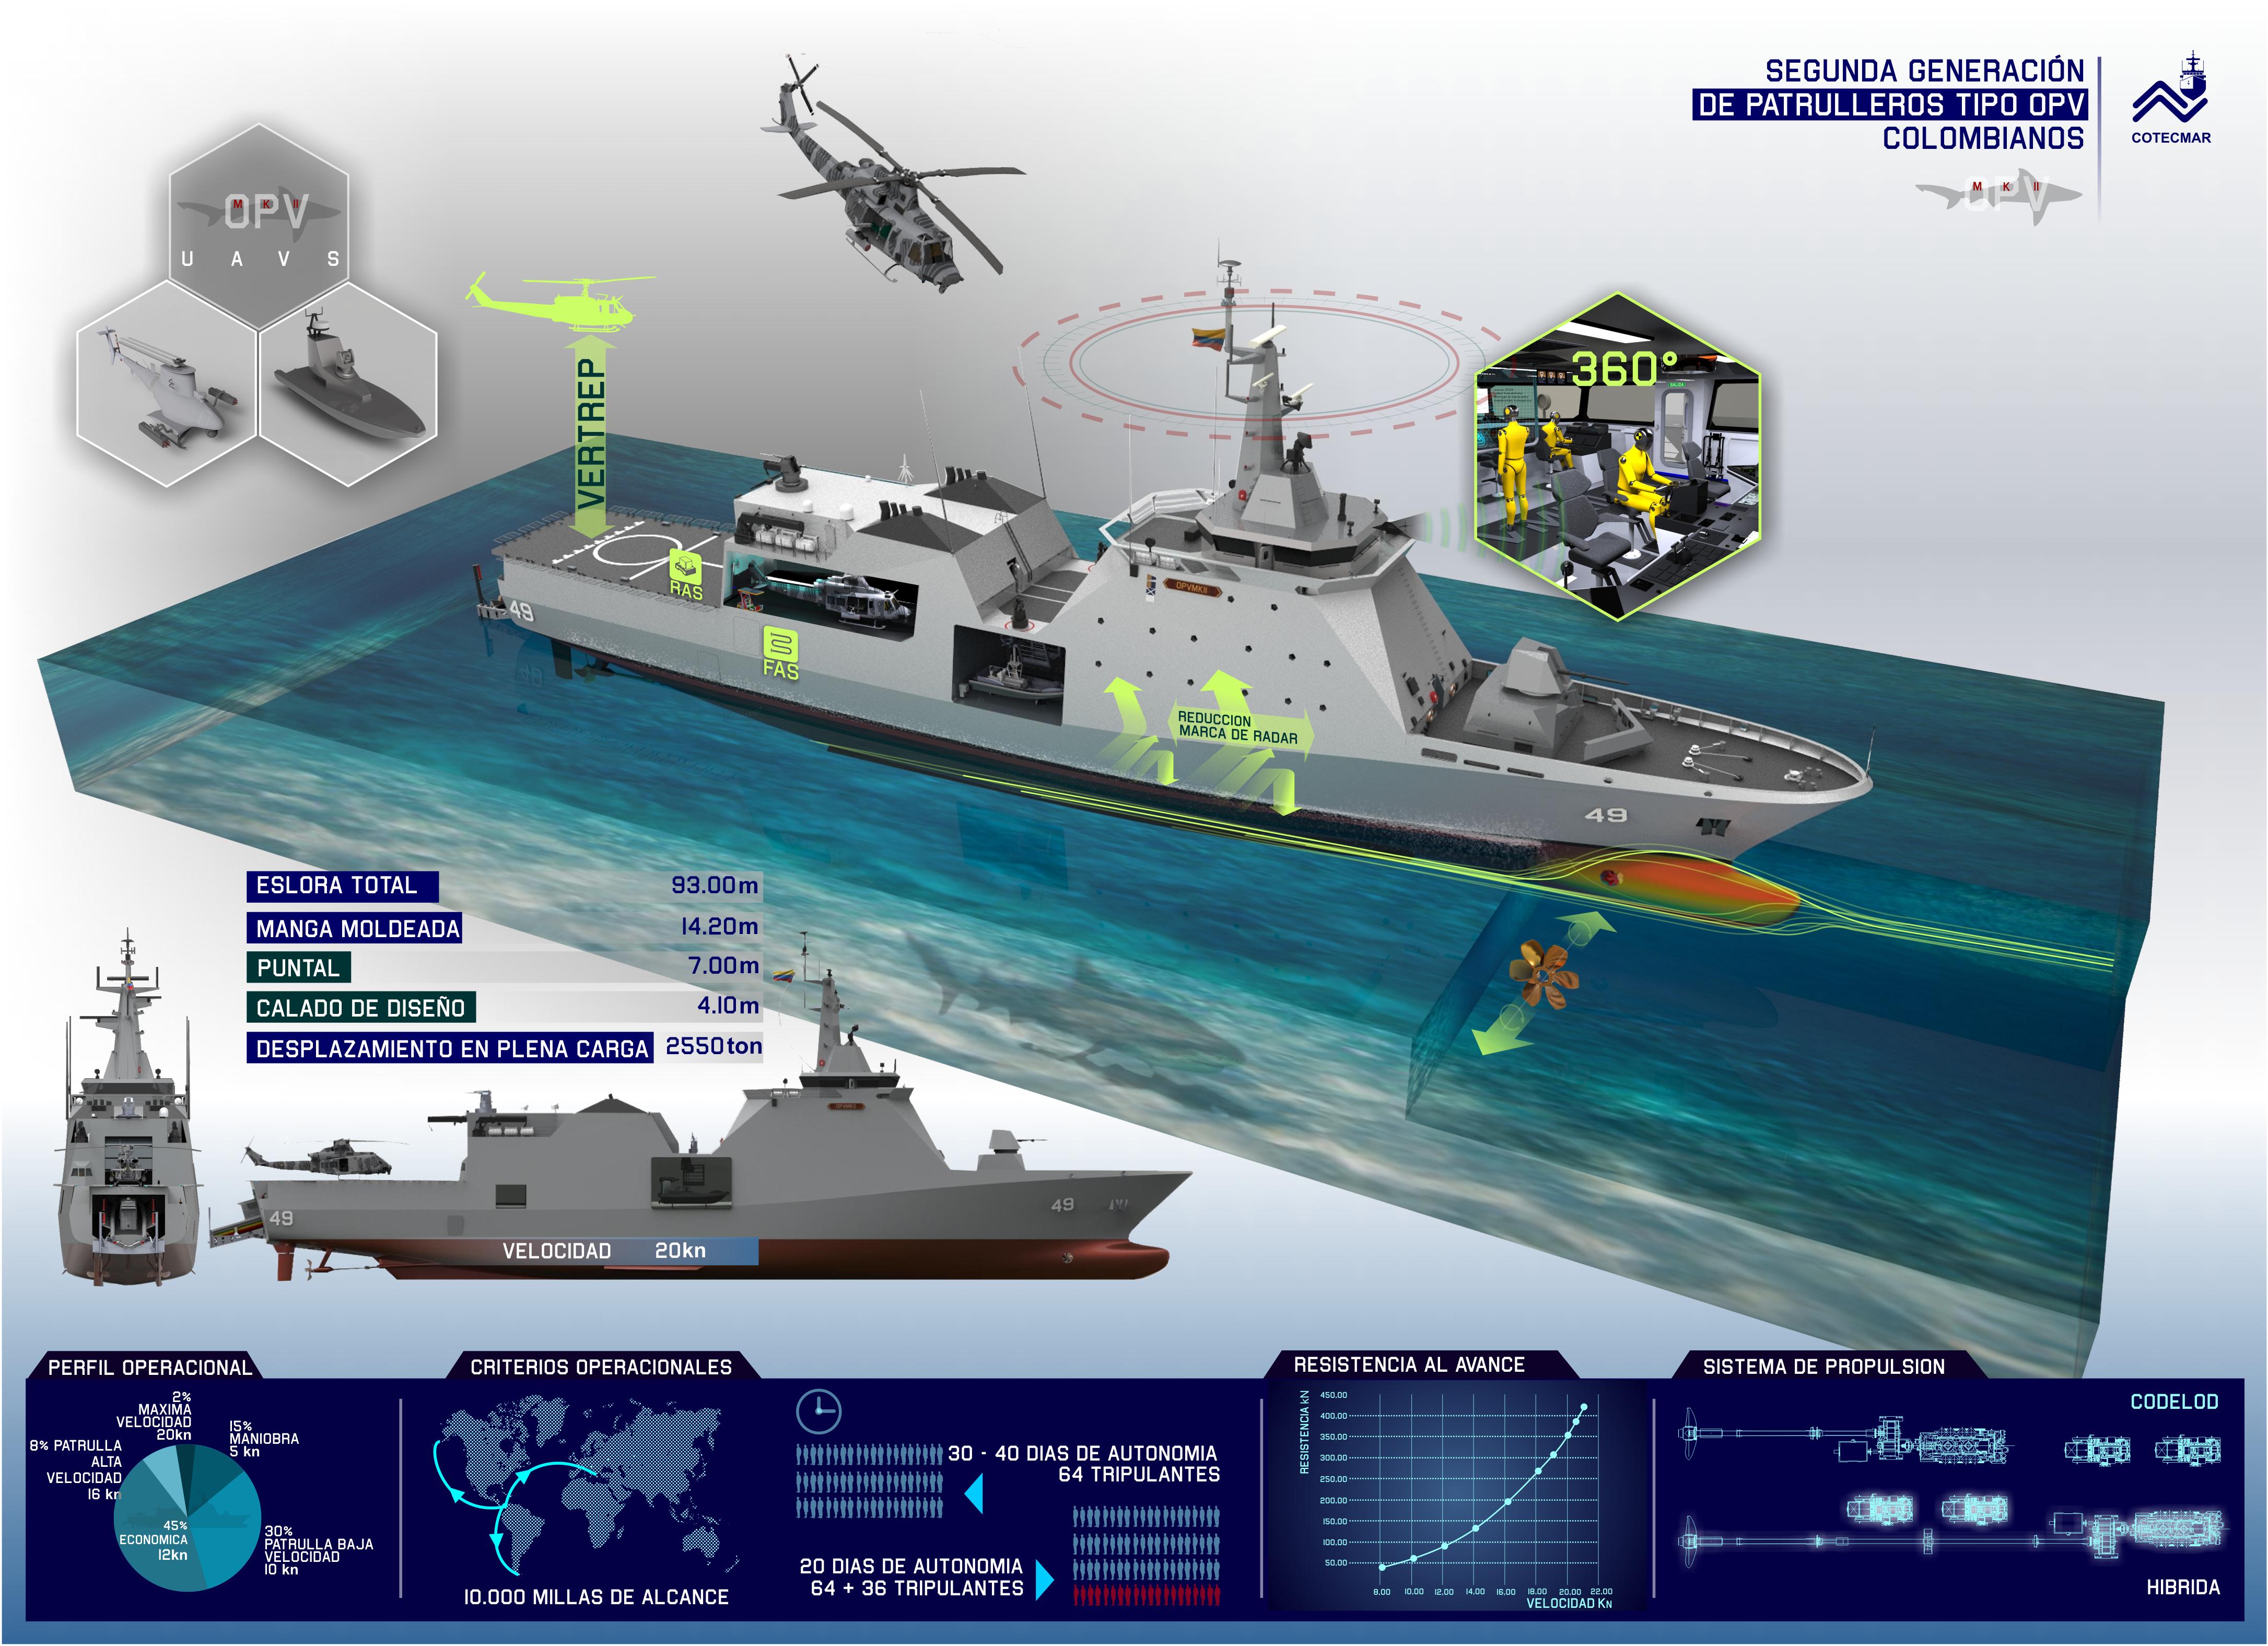 Colômbia:  primeiro navio-patrulha oceânico OPV 93 – ou “OPV de segunda geração”